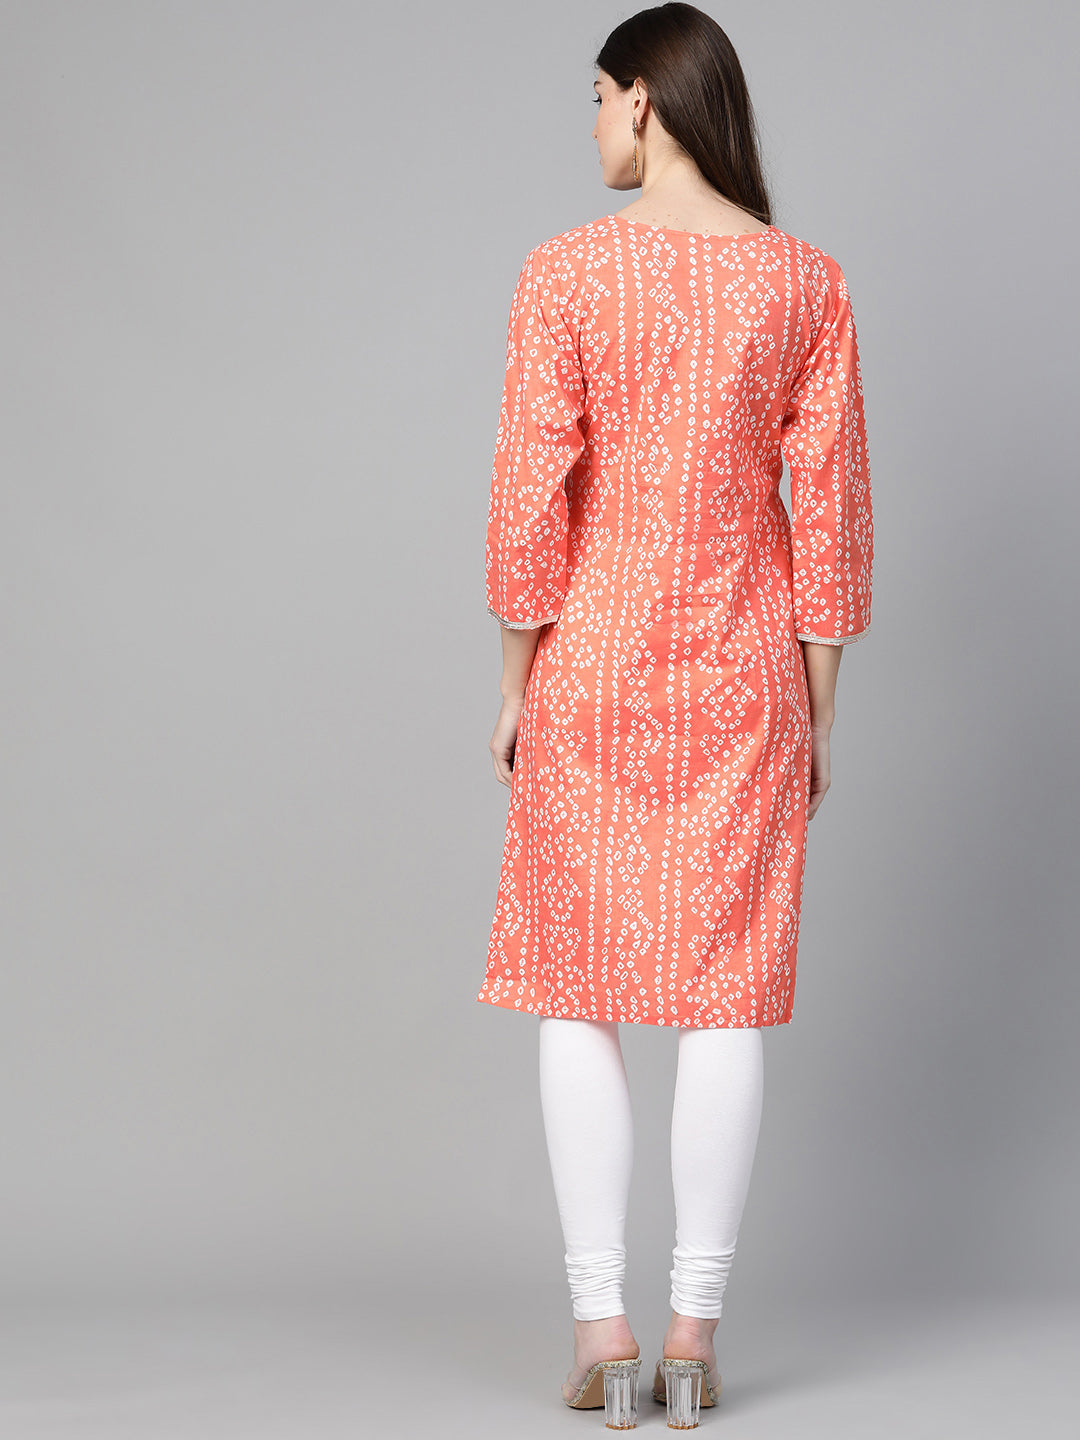 Women's Orange & White Printed Straight Kurta - Bhama Couture